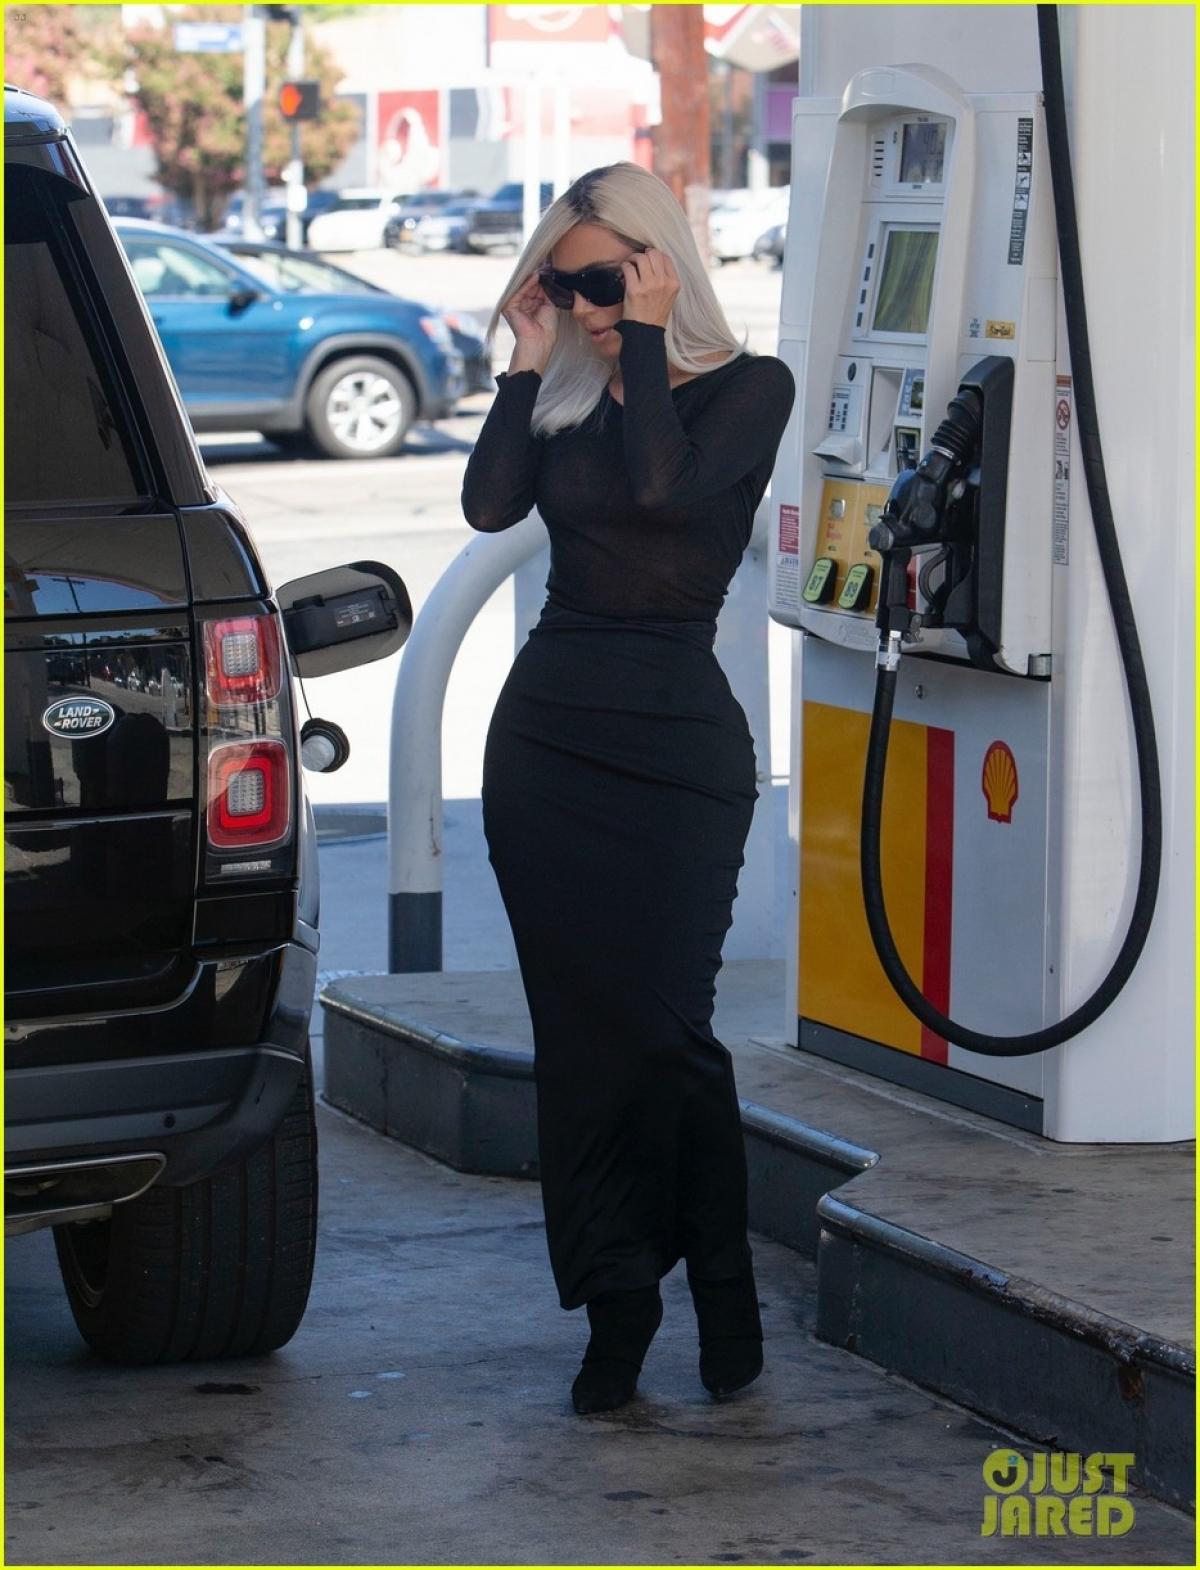 Kim Kardashian diện đầm bó khoe body nóng bỏng trên phố sau khi chia tay - Ảnh 3.